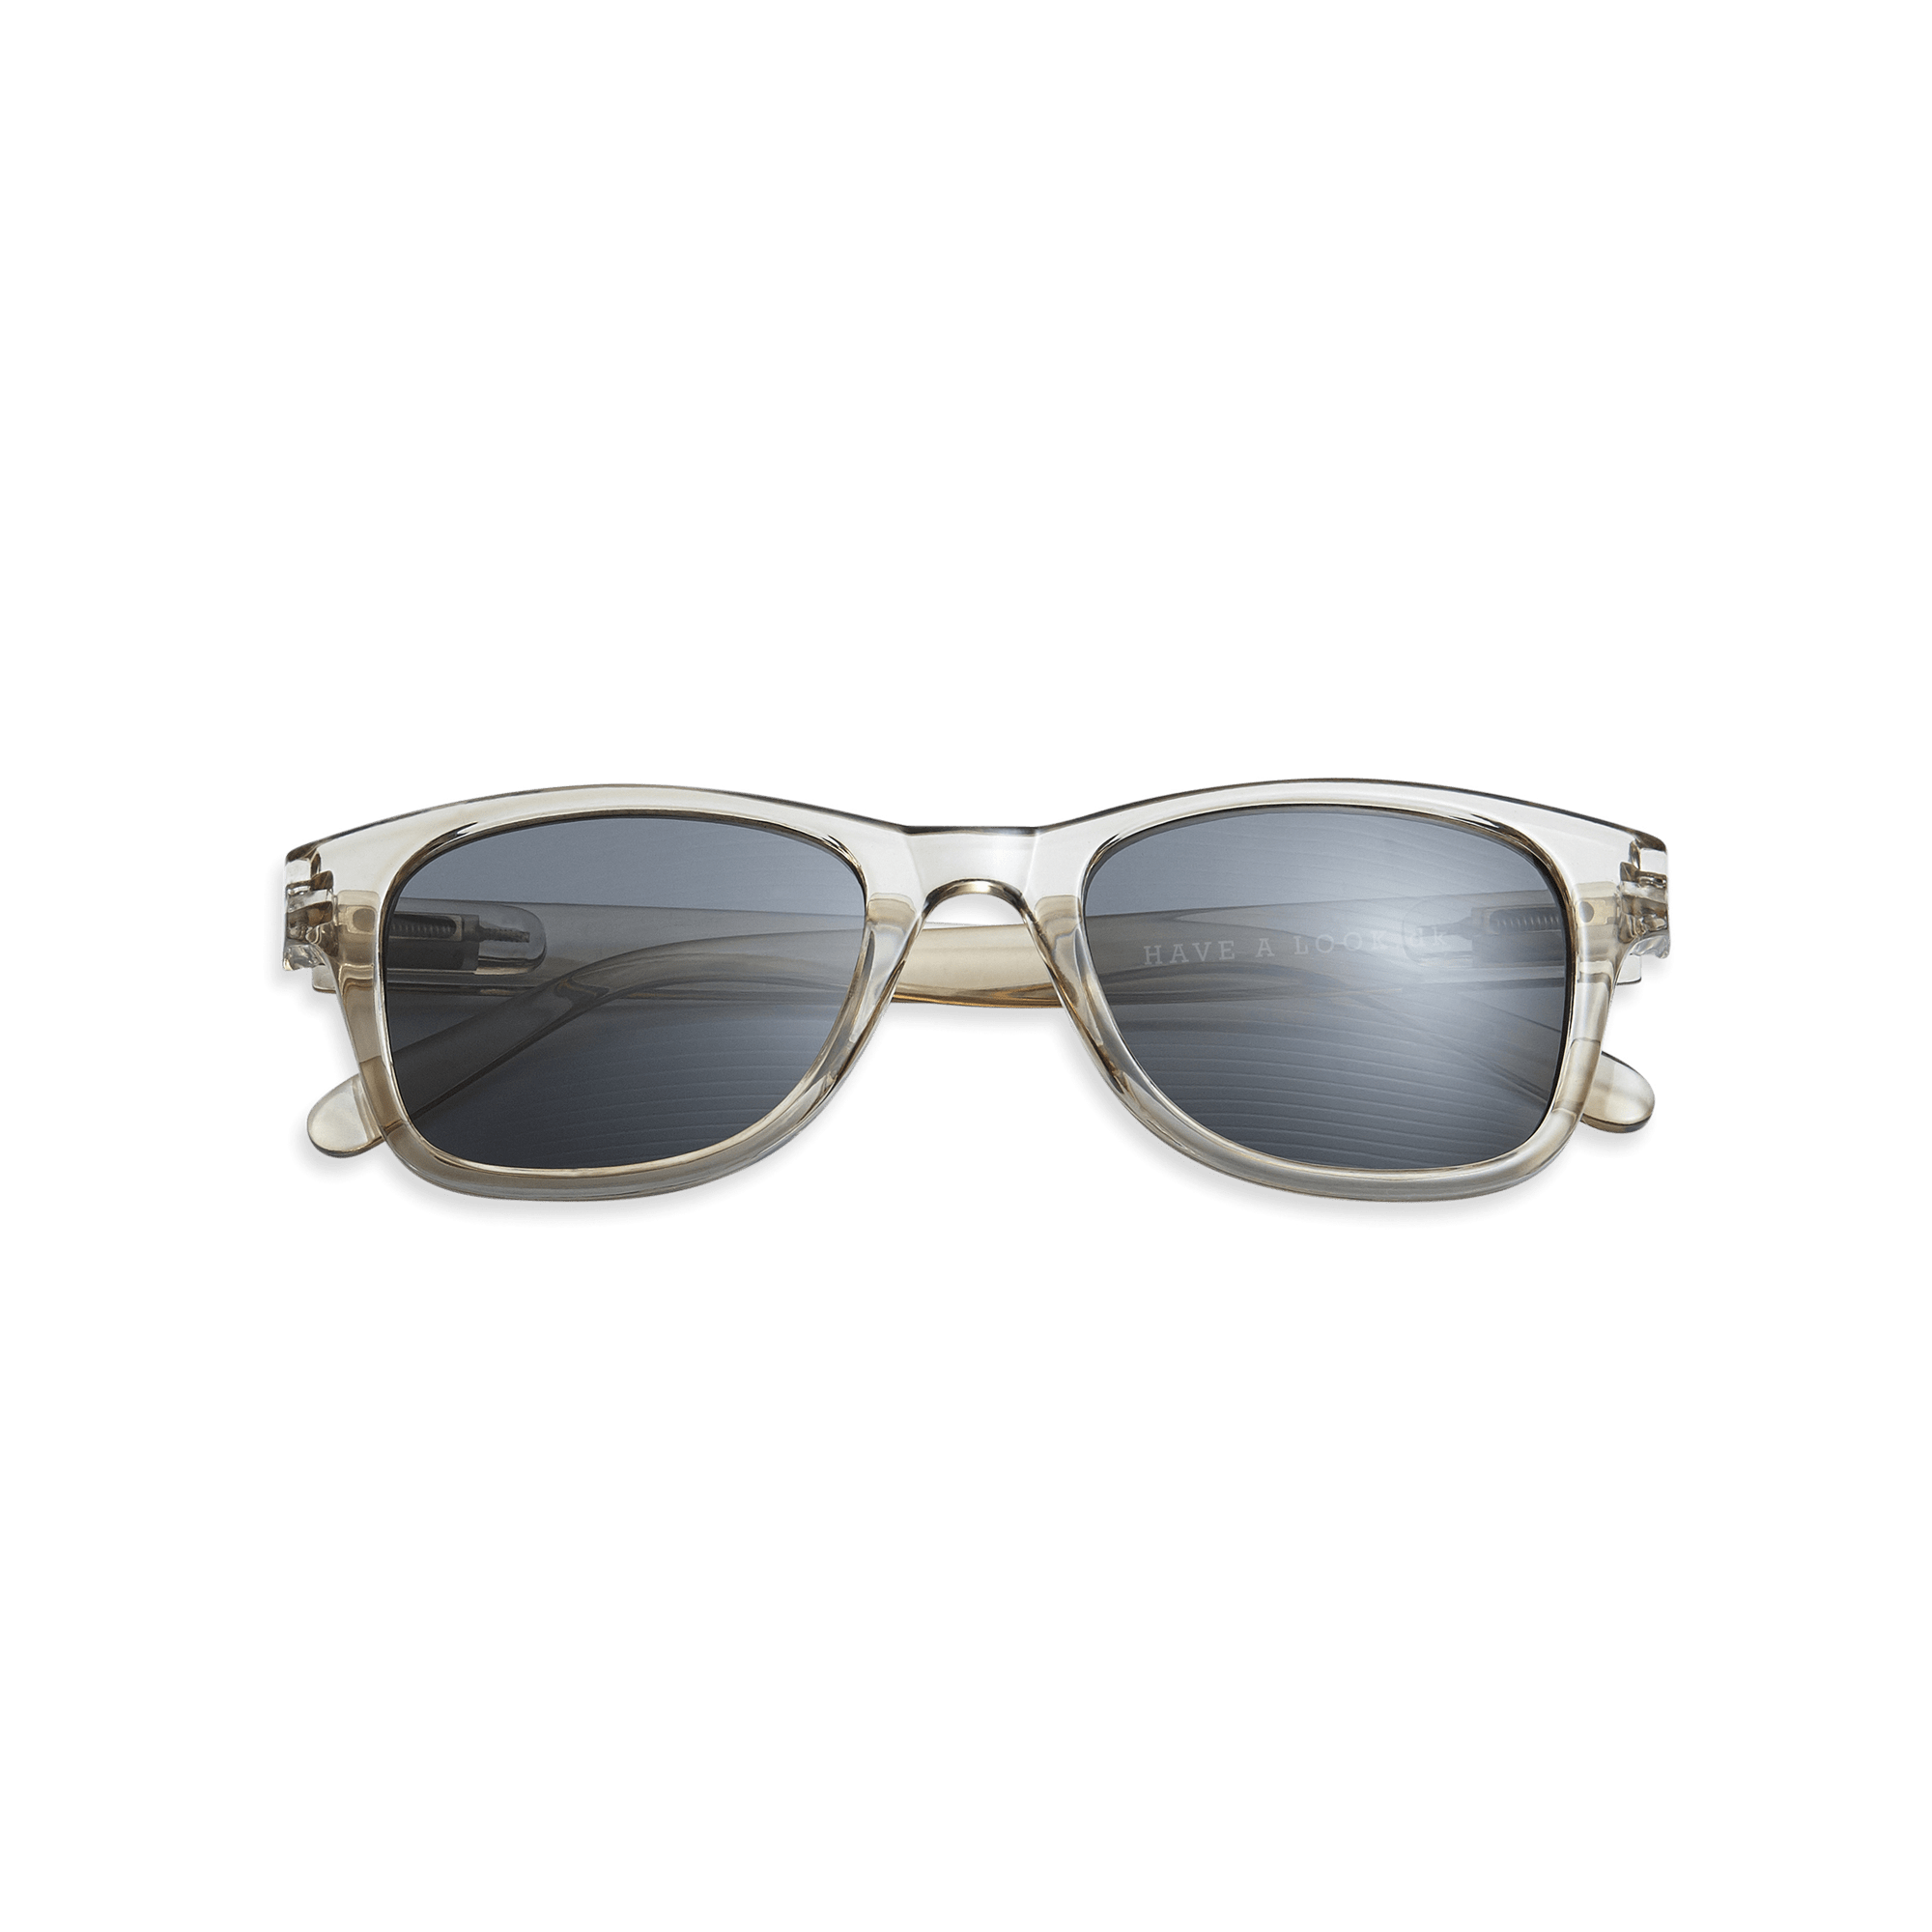 Minus sunglasses Type B - olive